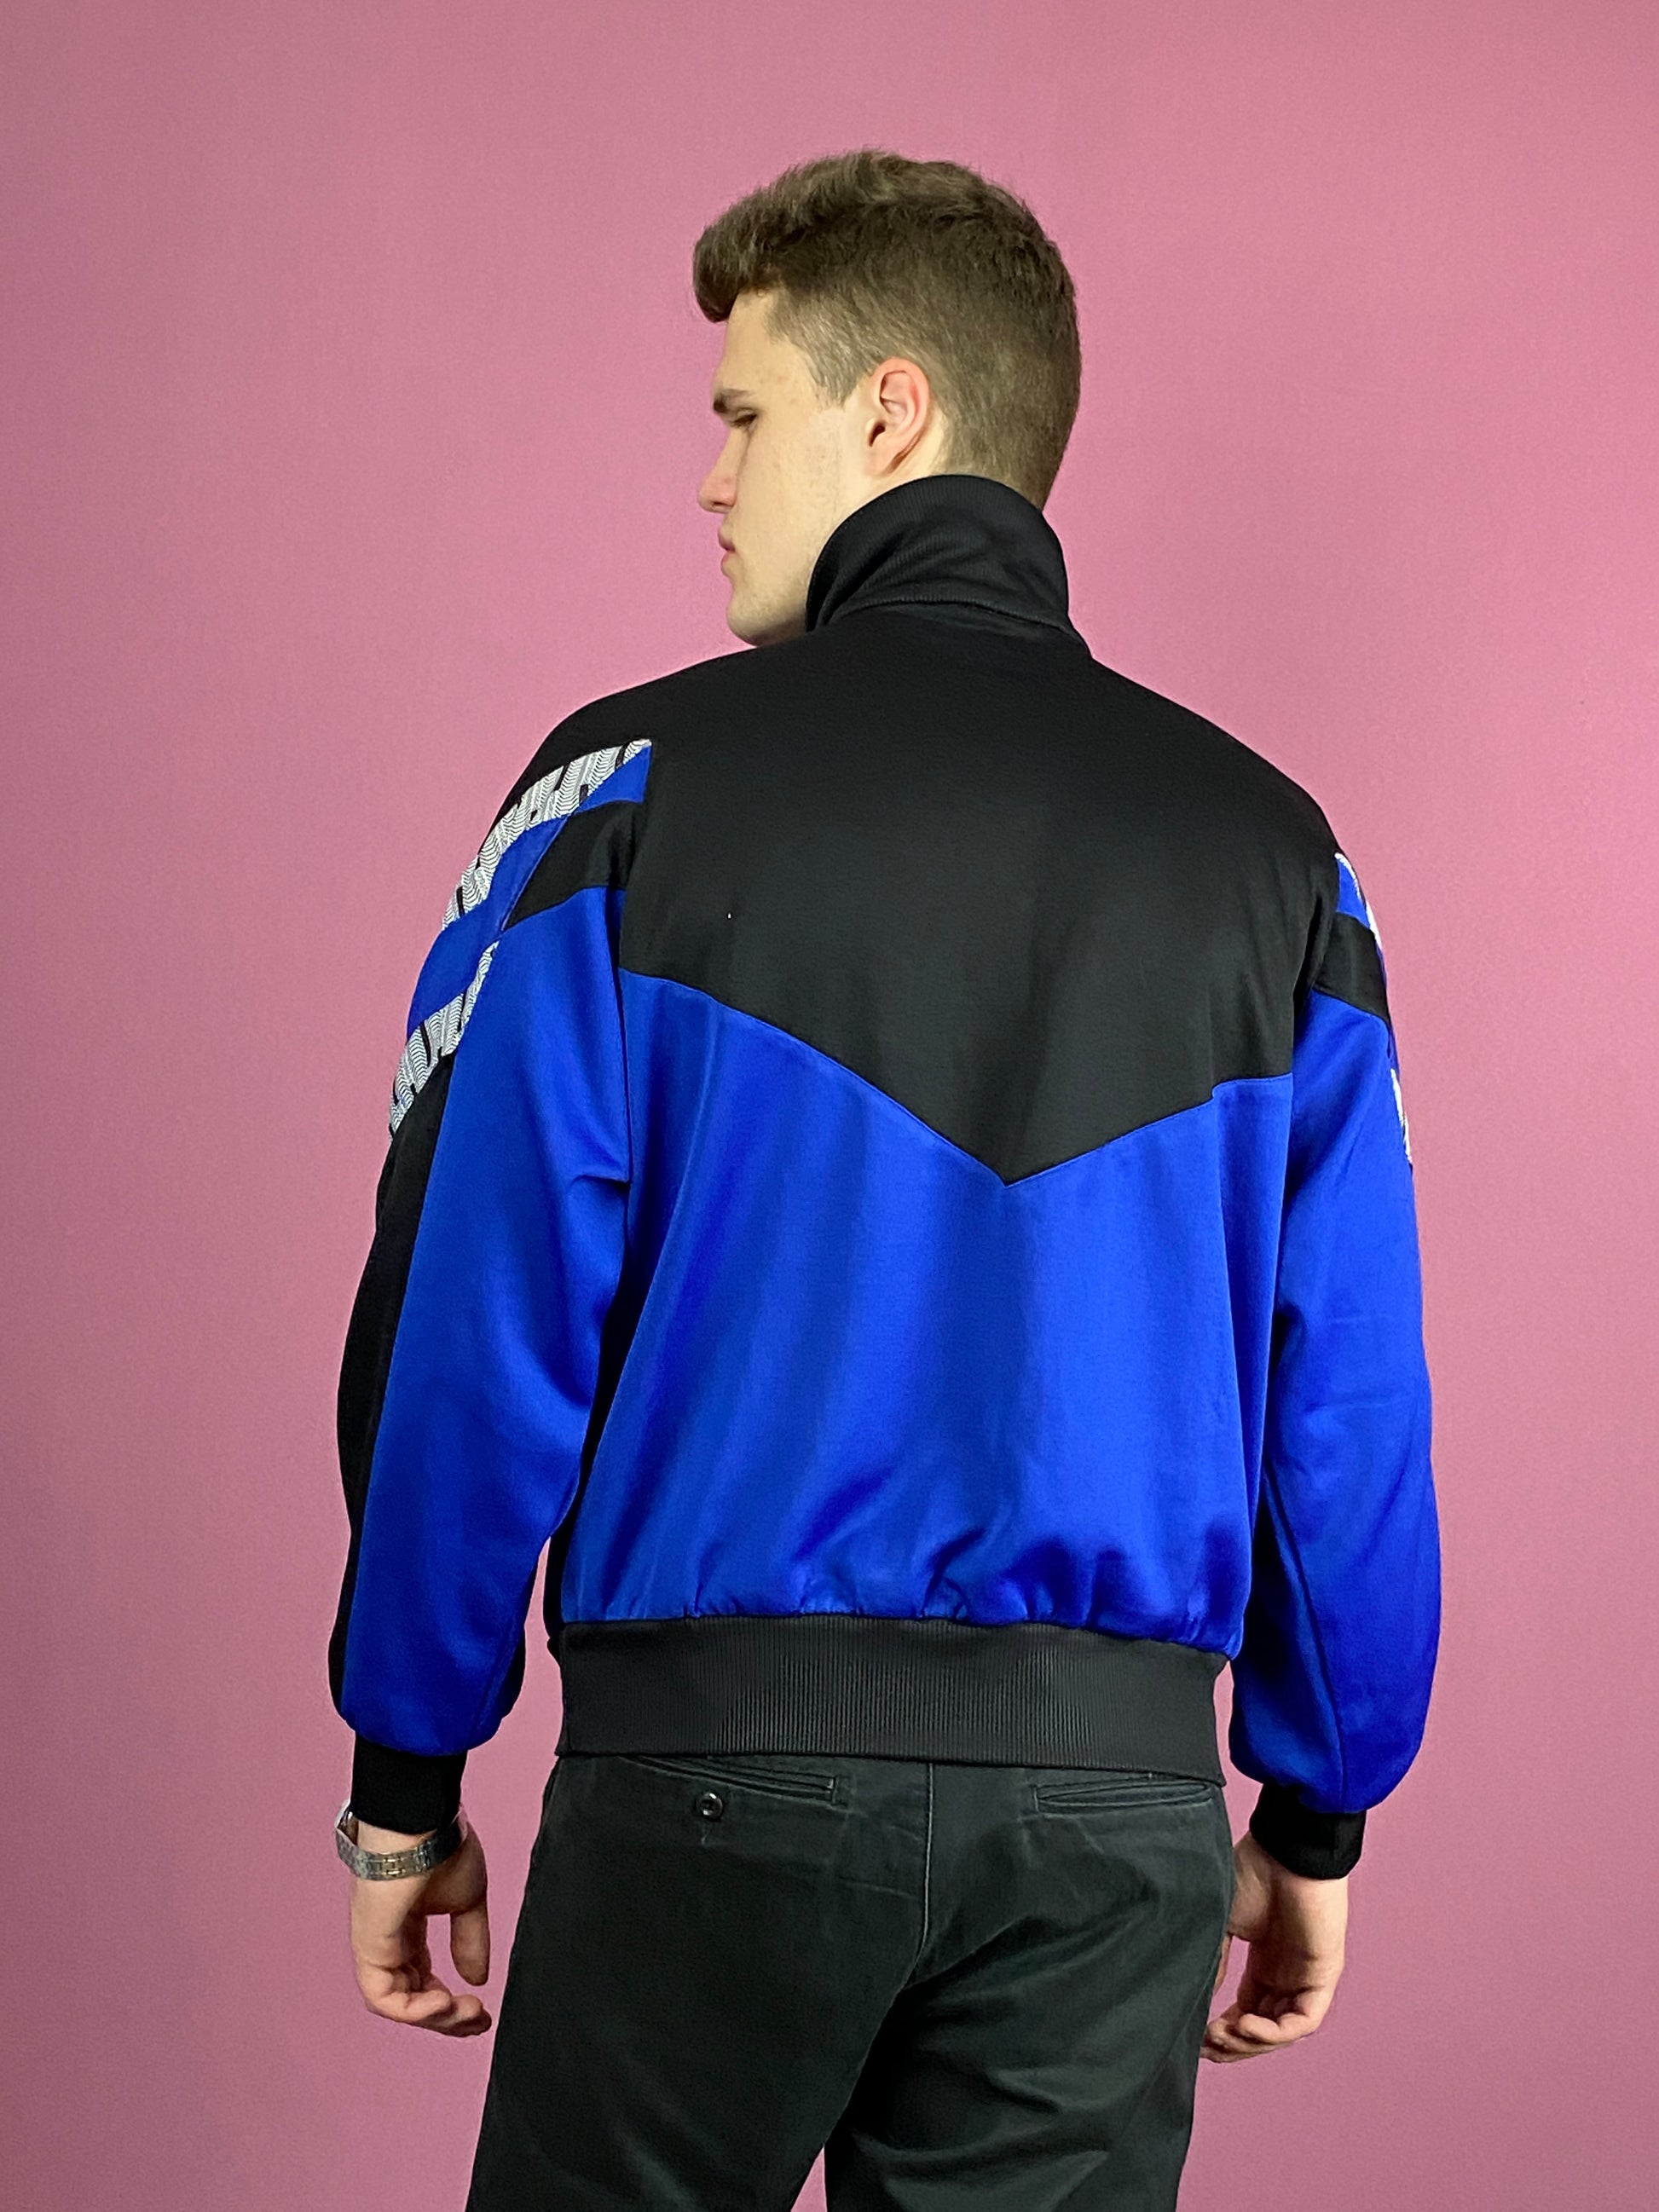 Saller Vintage Men's Qurter Zip Track Jacket - Large Blue & Black Polyester